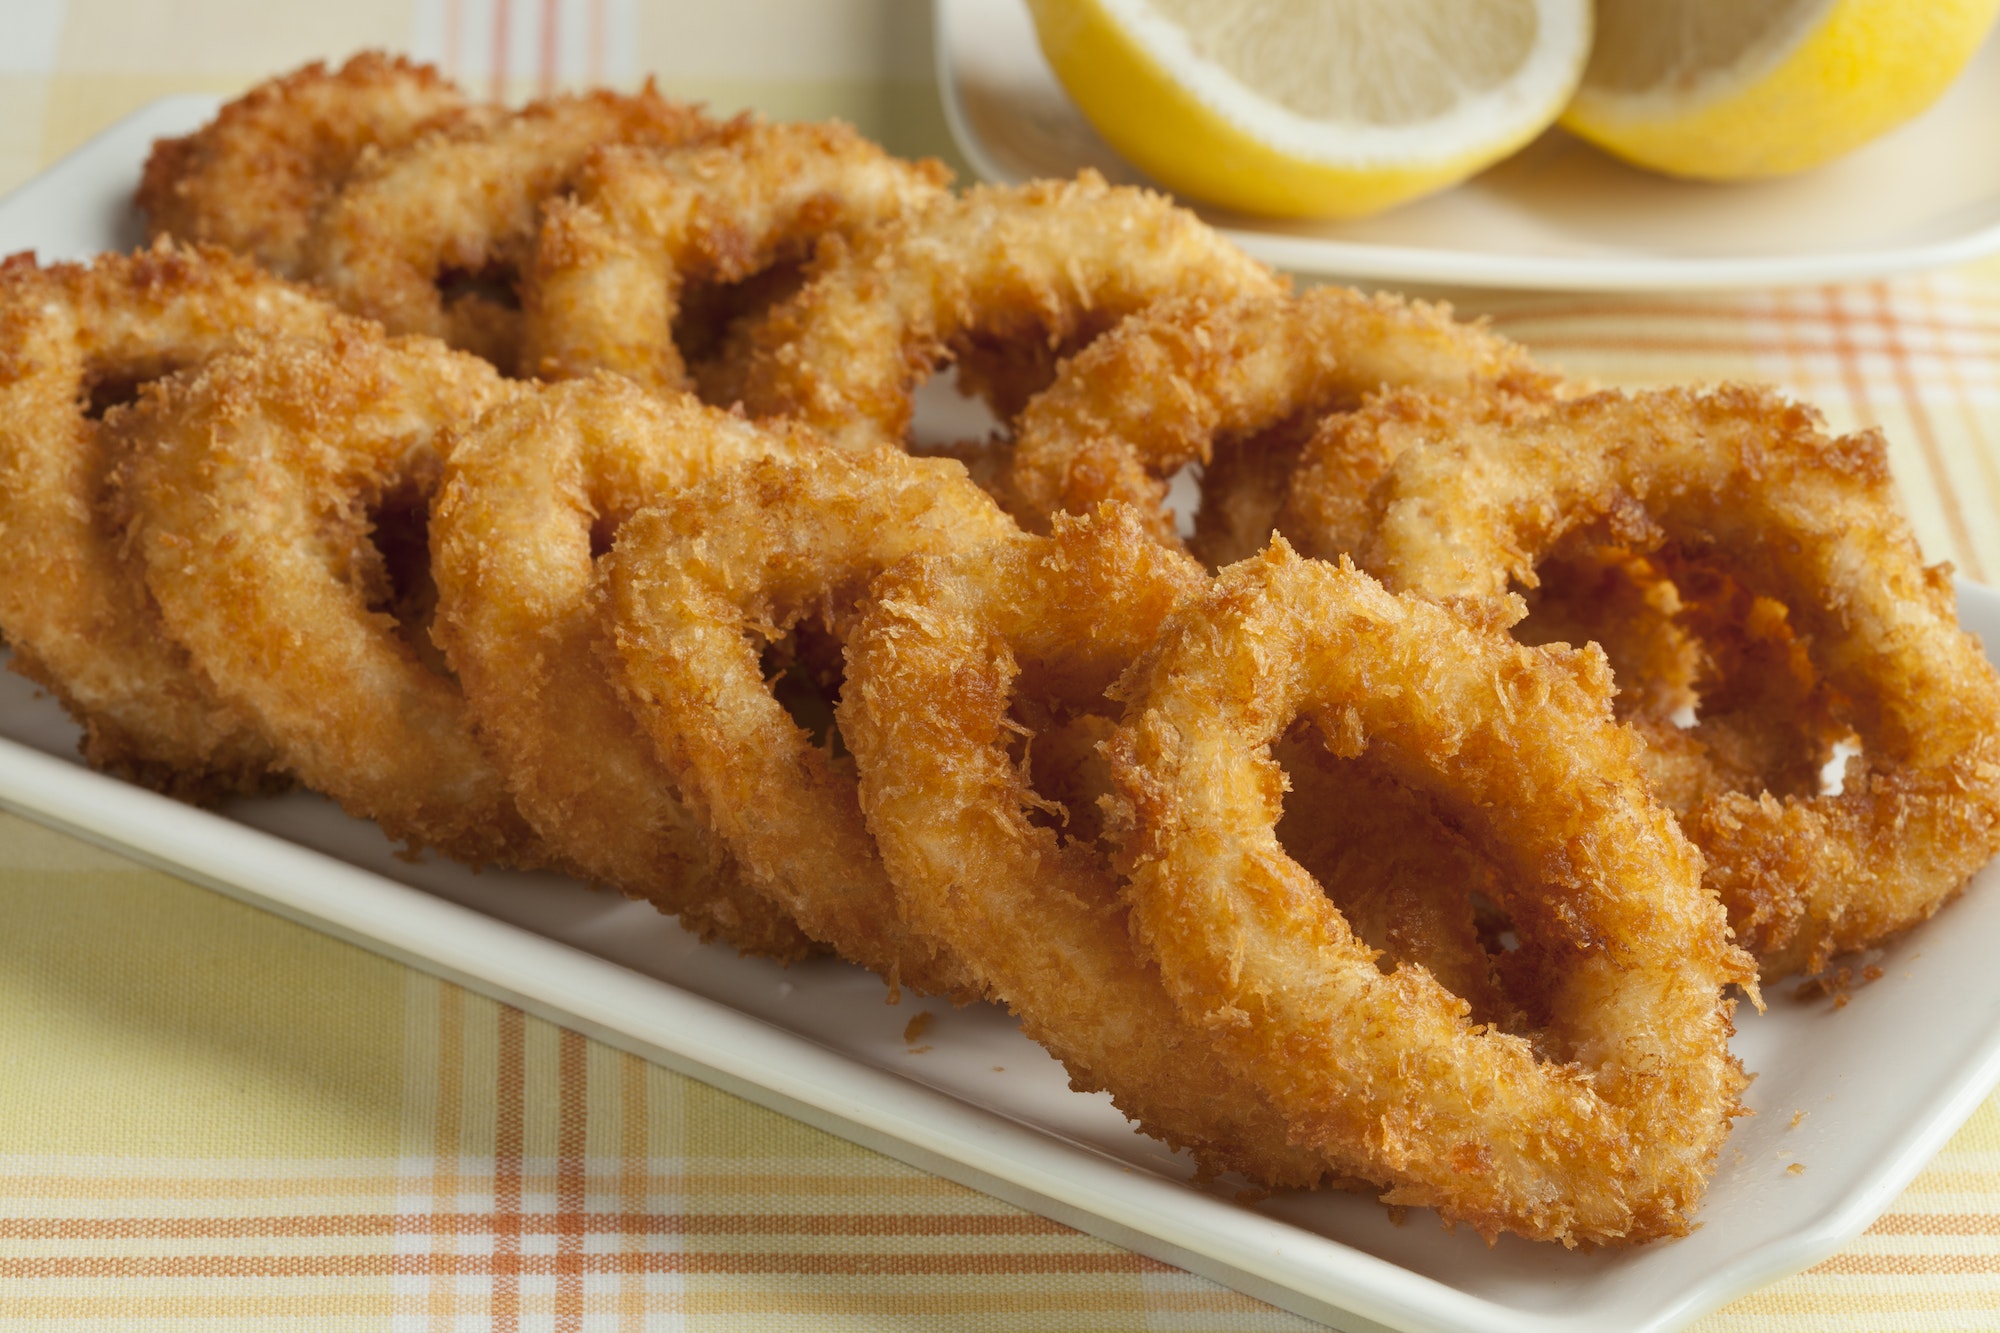 Deep fried squid rings in breadcrumbs